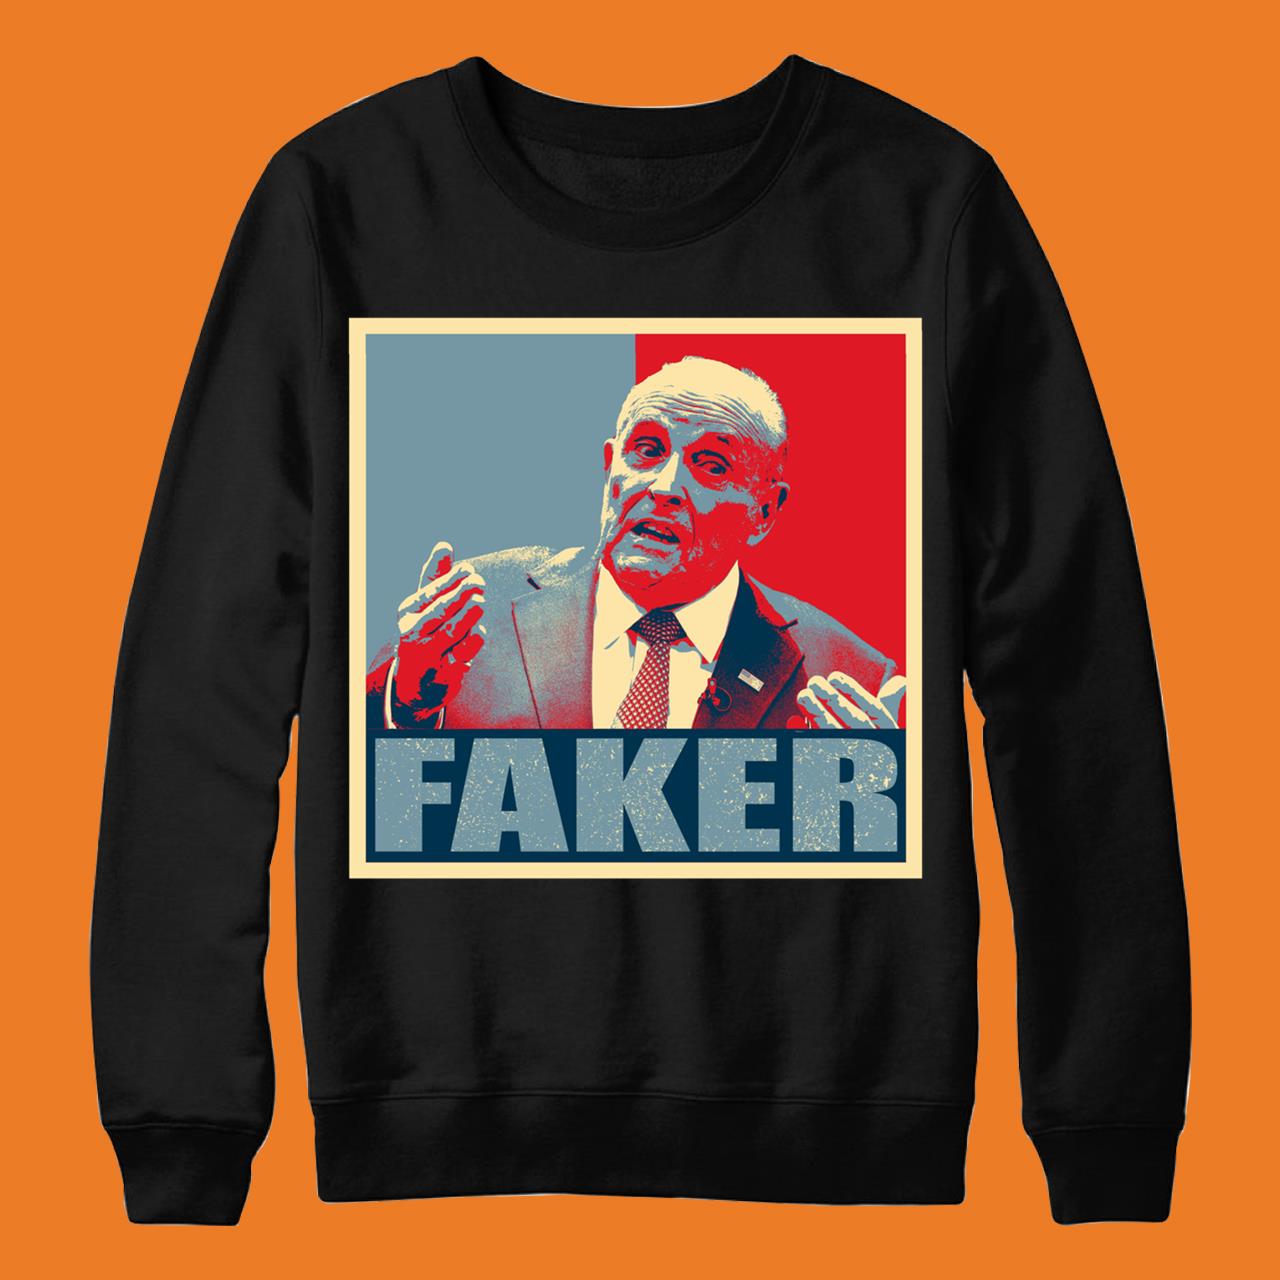 Faker – Rudy Giuliani Classic T-Shirt